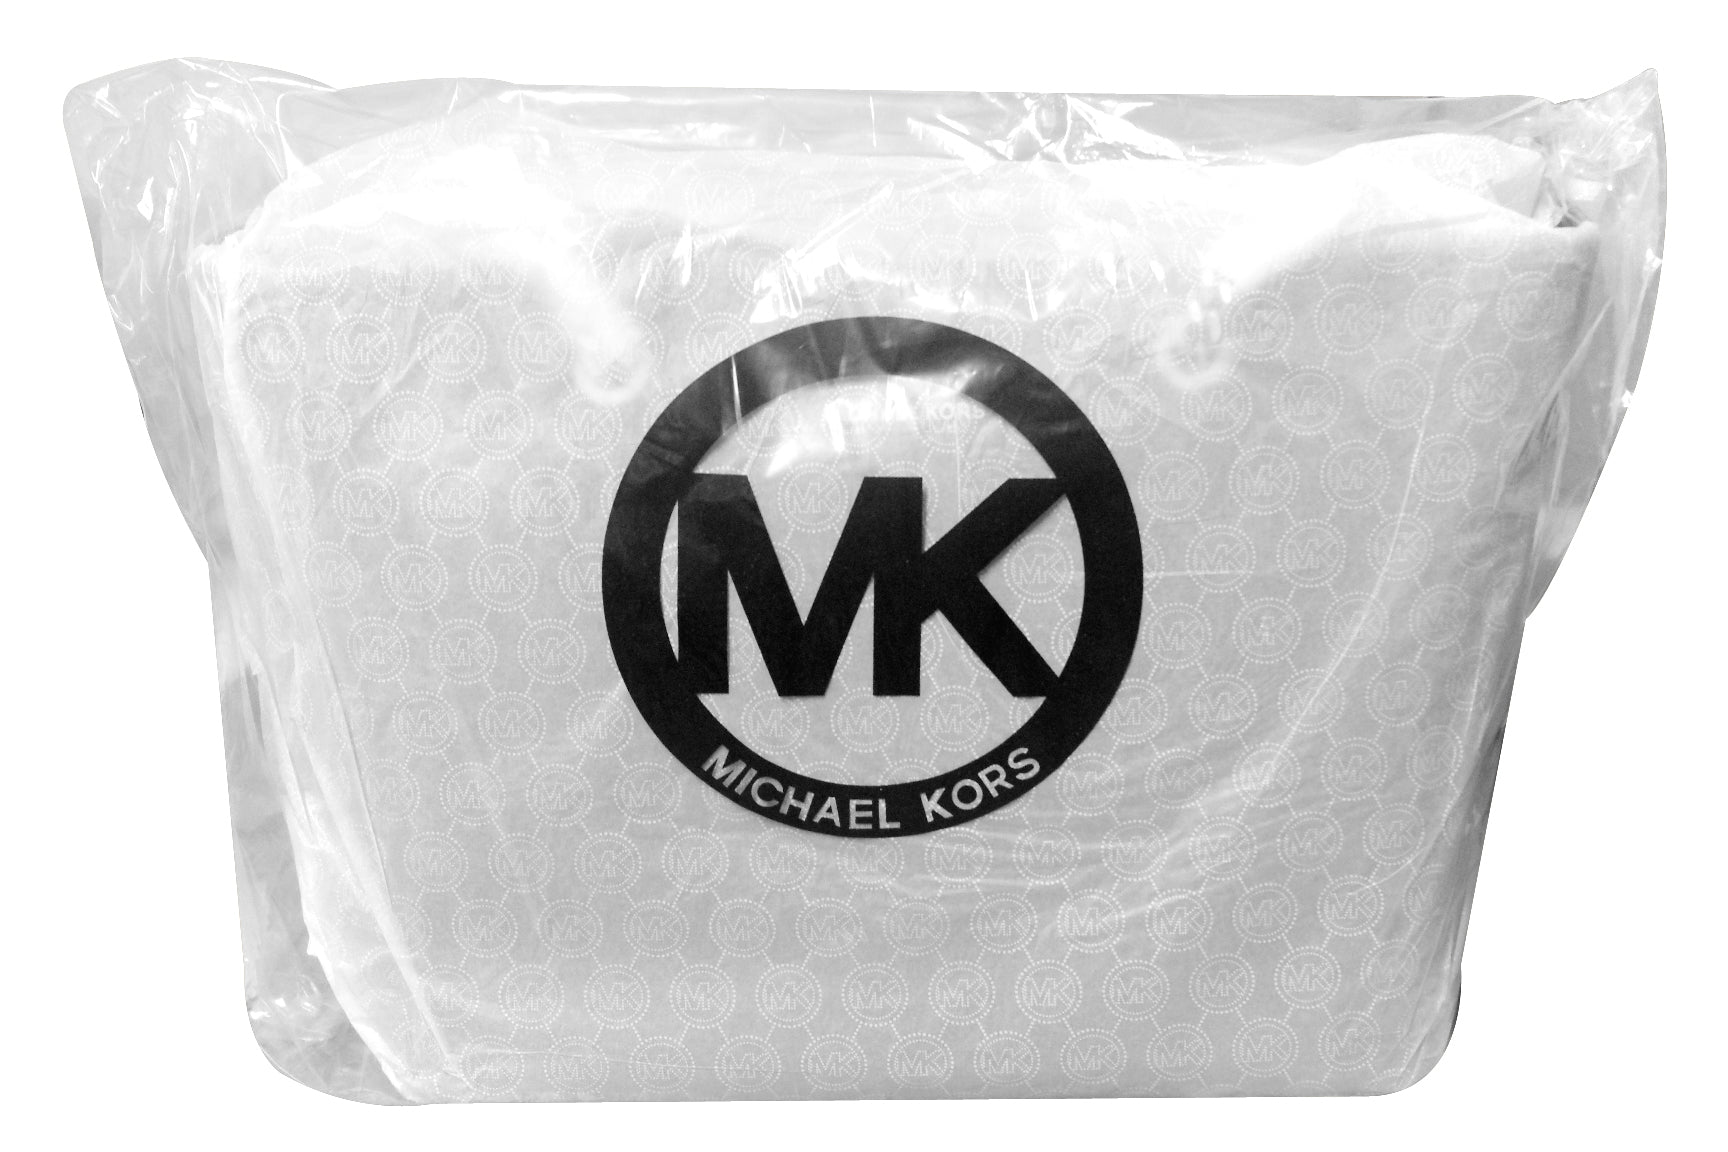 Totes bags Michael Kors - Jet Set Travel Chain medium tote - 30T6GJ8T6L848